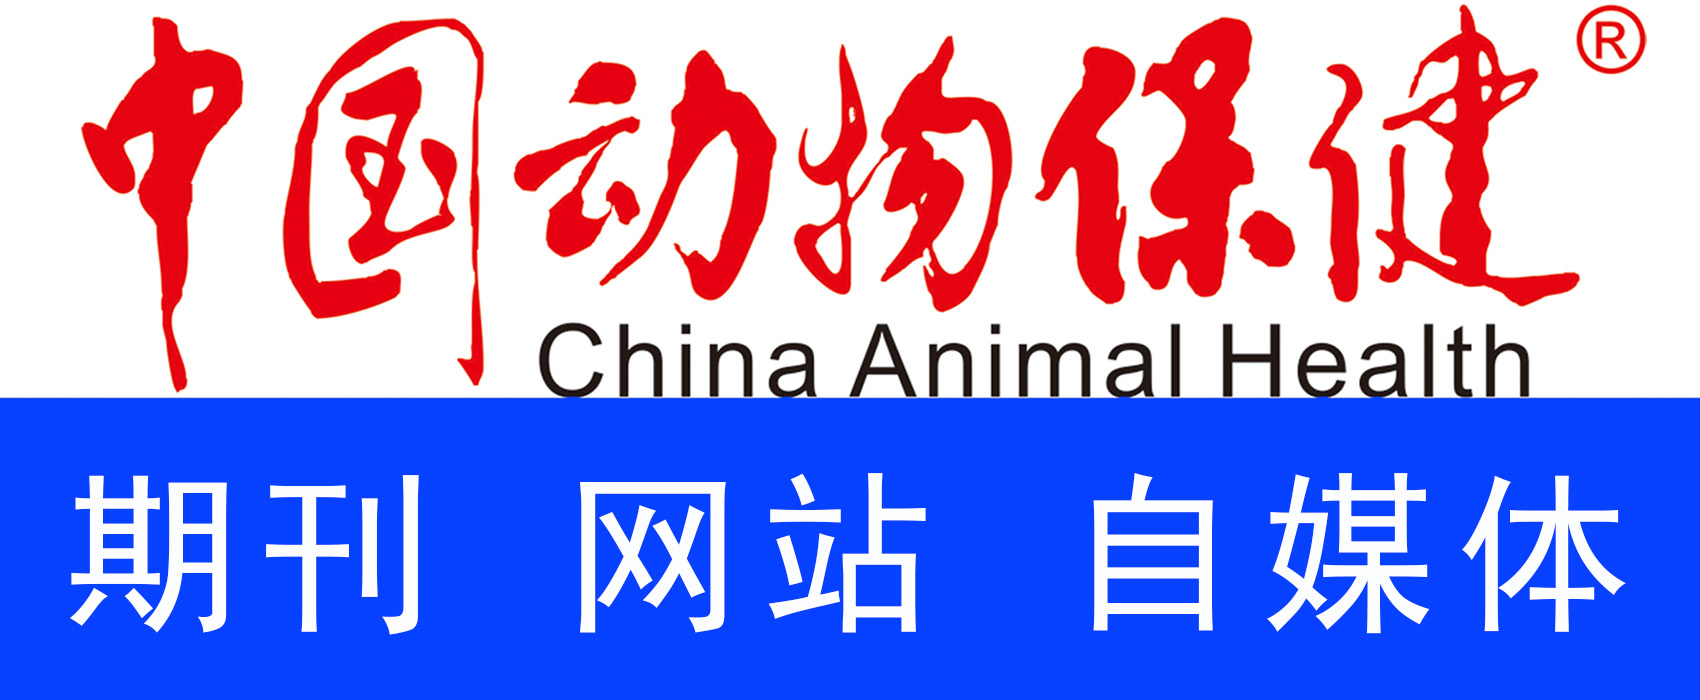 中国动物保健